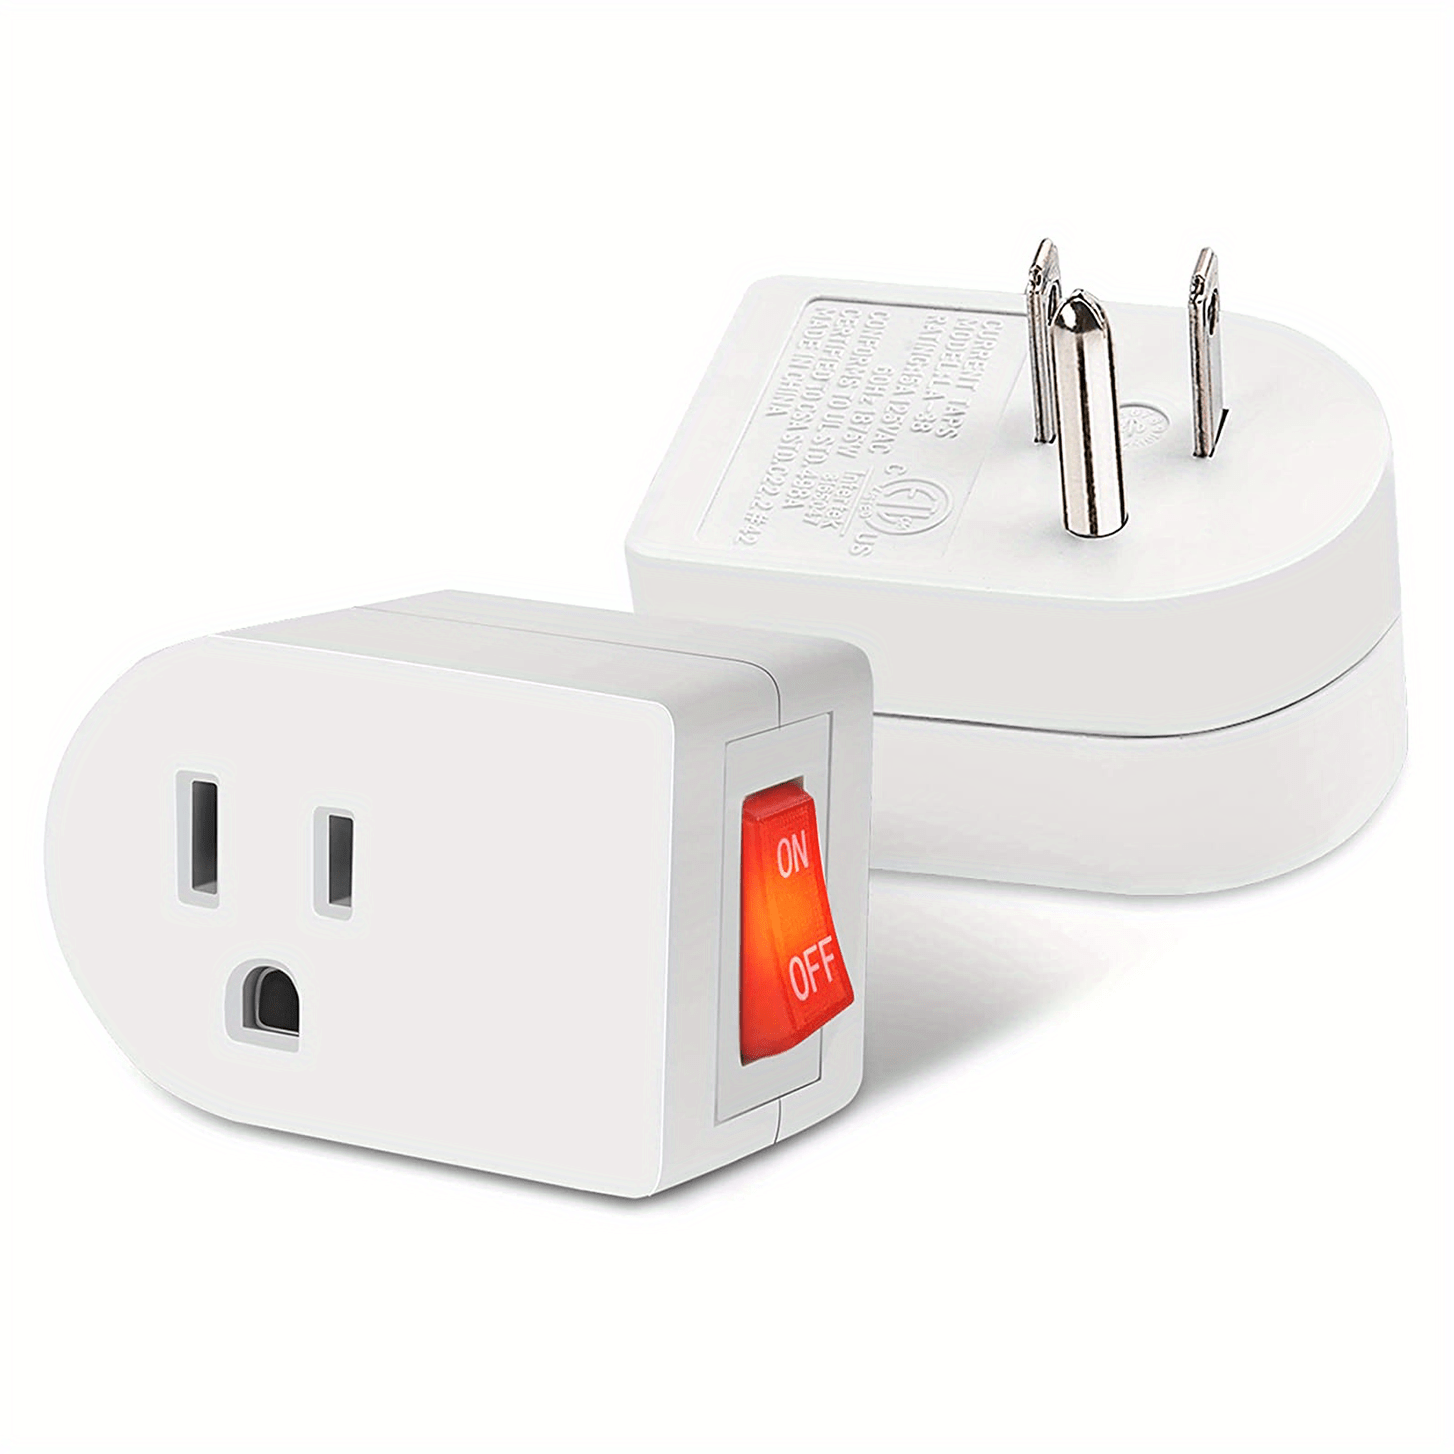 Enchufe de luz enchufable, adaptador de salida a enchufe, enchufe giratorio  de 360° con interruptor de encendido/apagado, listado ETL, blanco